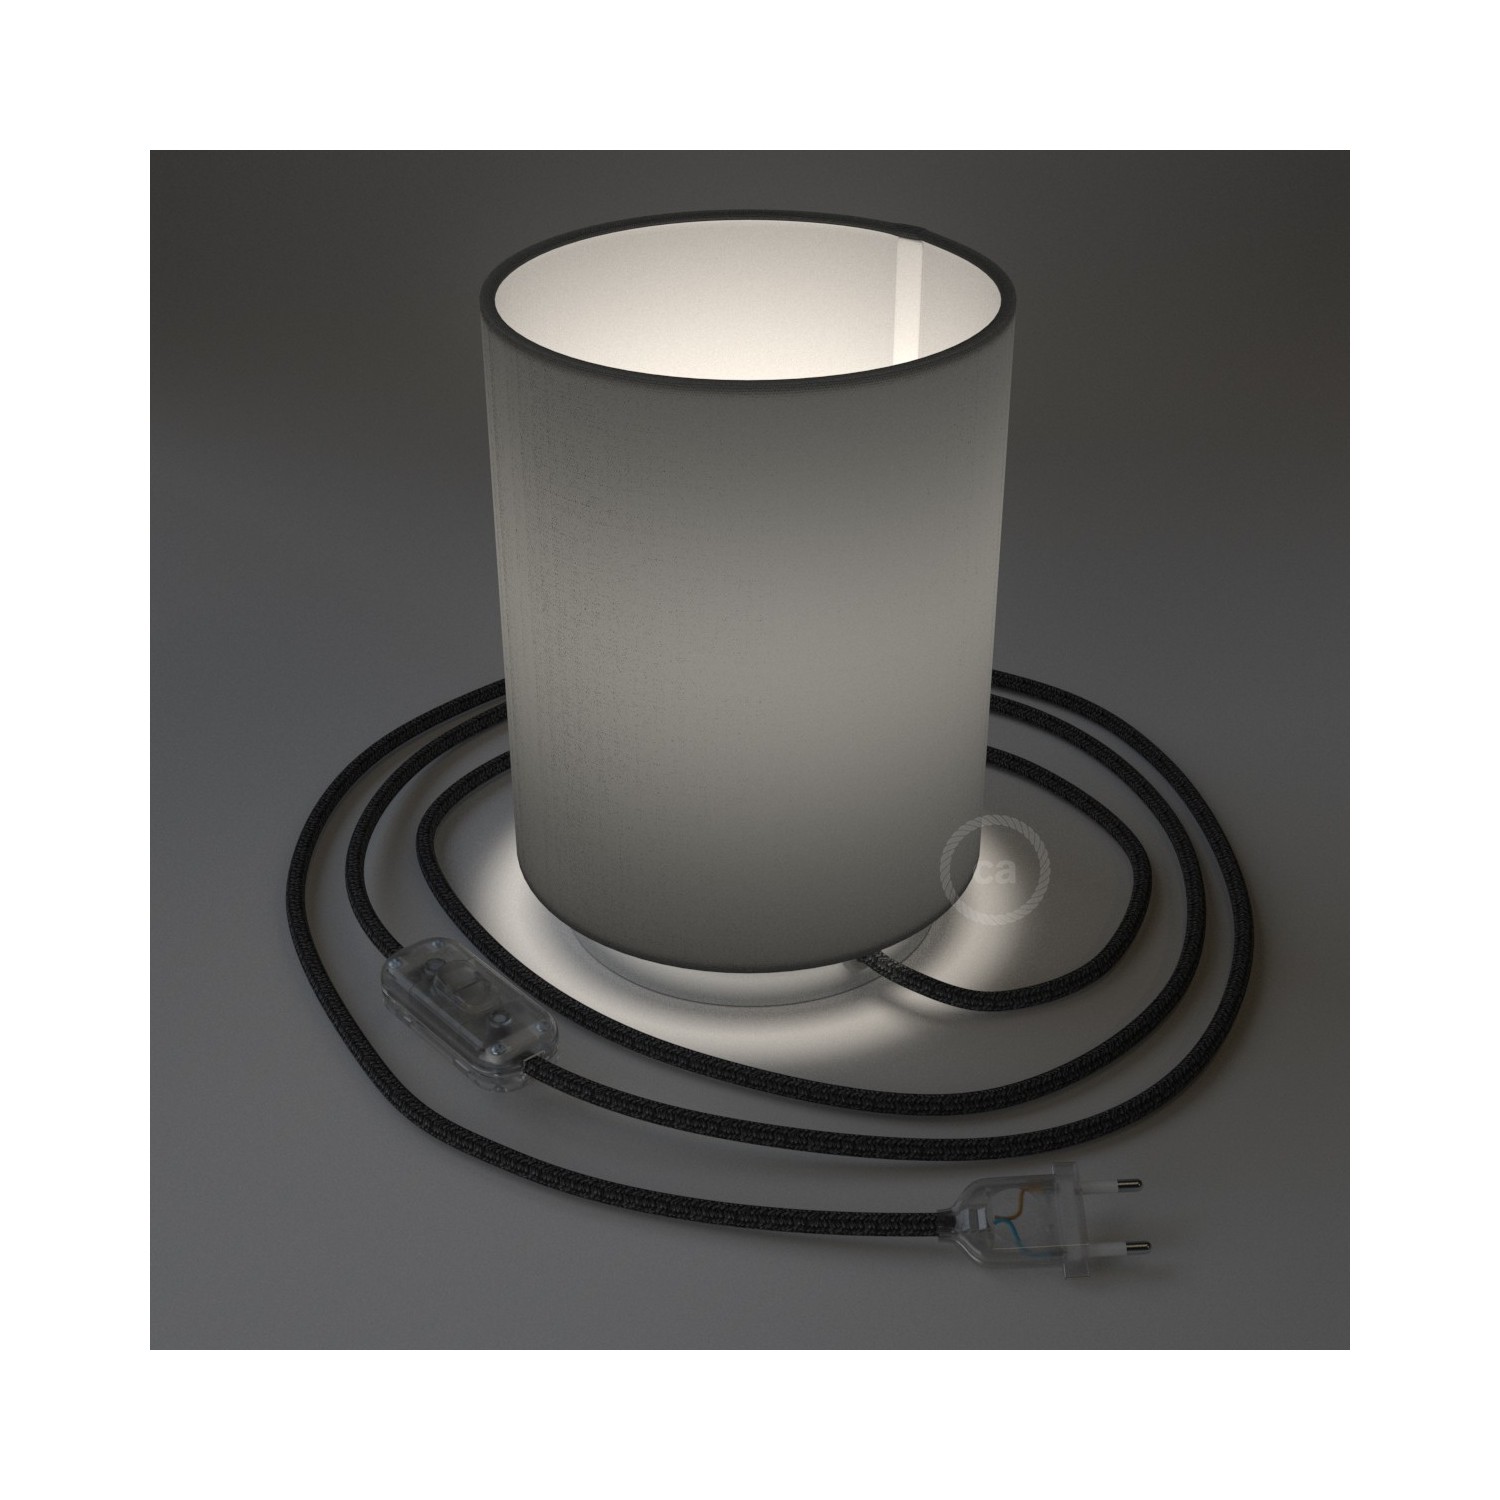 Posaluce Metal met penguin-electra lampenkap Cilindro, inclusief lichtbron, textielkabel, schakelaar en 2-polige stekker